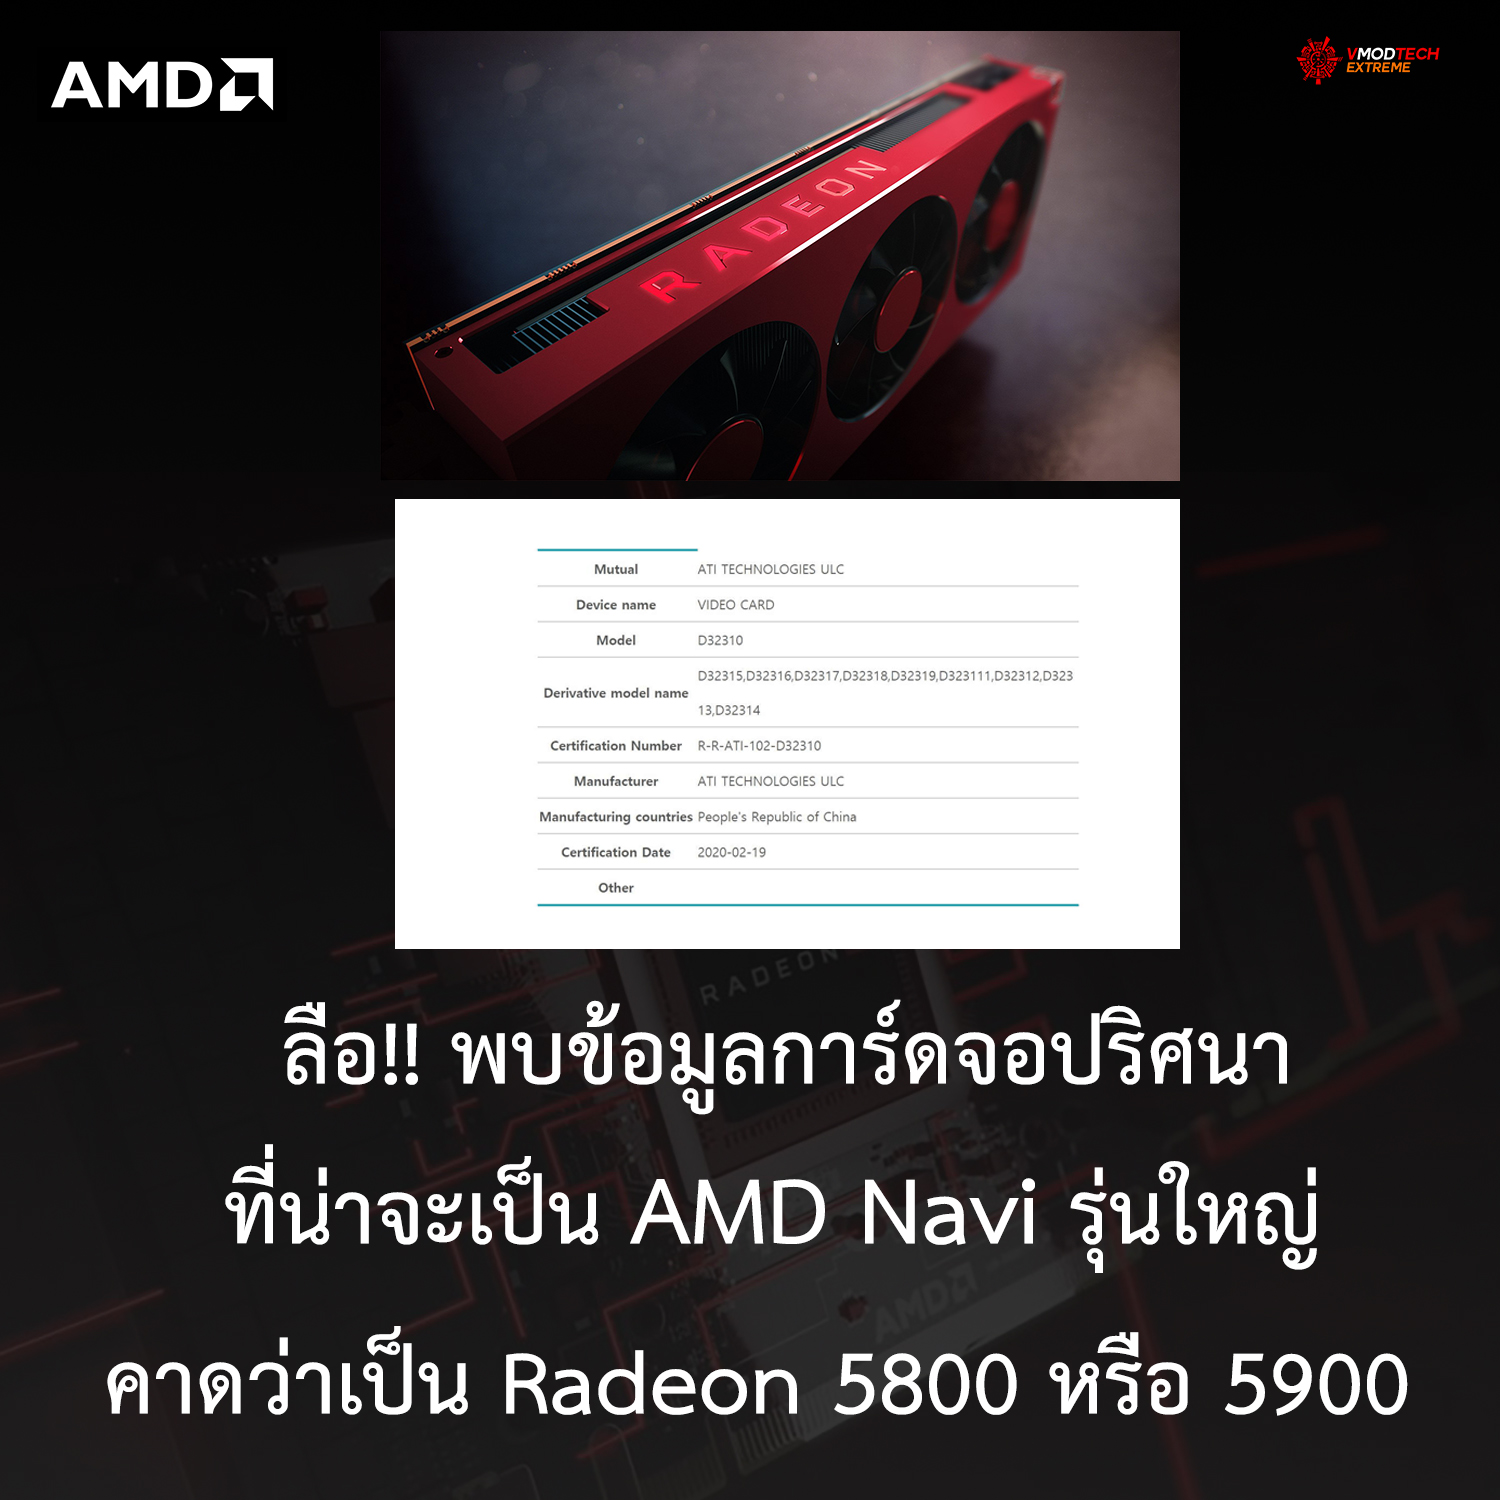 ลือ!! พบข้อมูลการ์ดจอปริศนาที่น่าจะเป็น AMD Navi รุ่นใหญ่คาดว่าเป็น Radeon 5800 หรือ 5900 